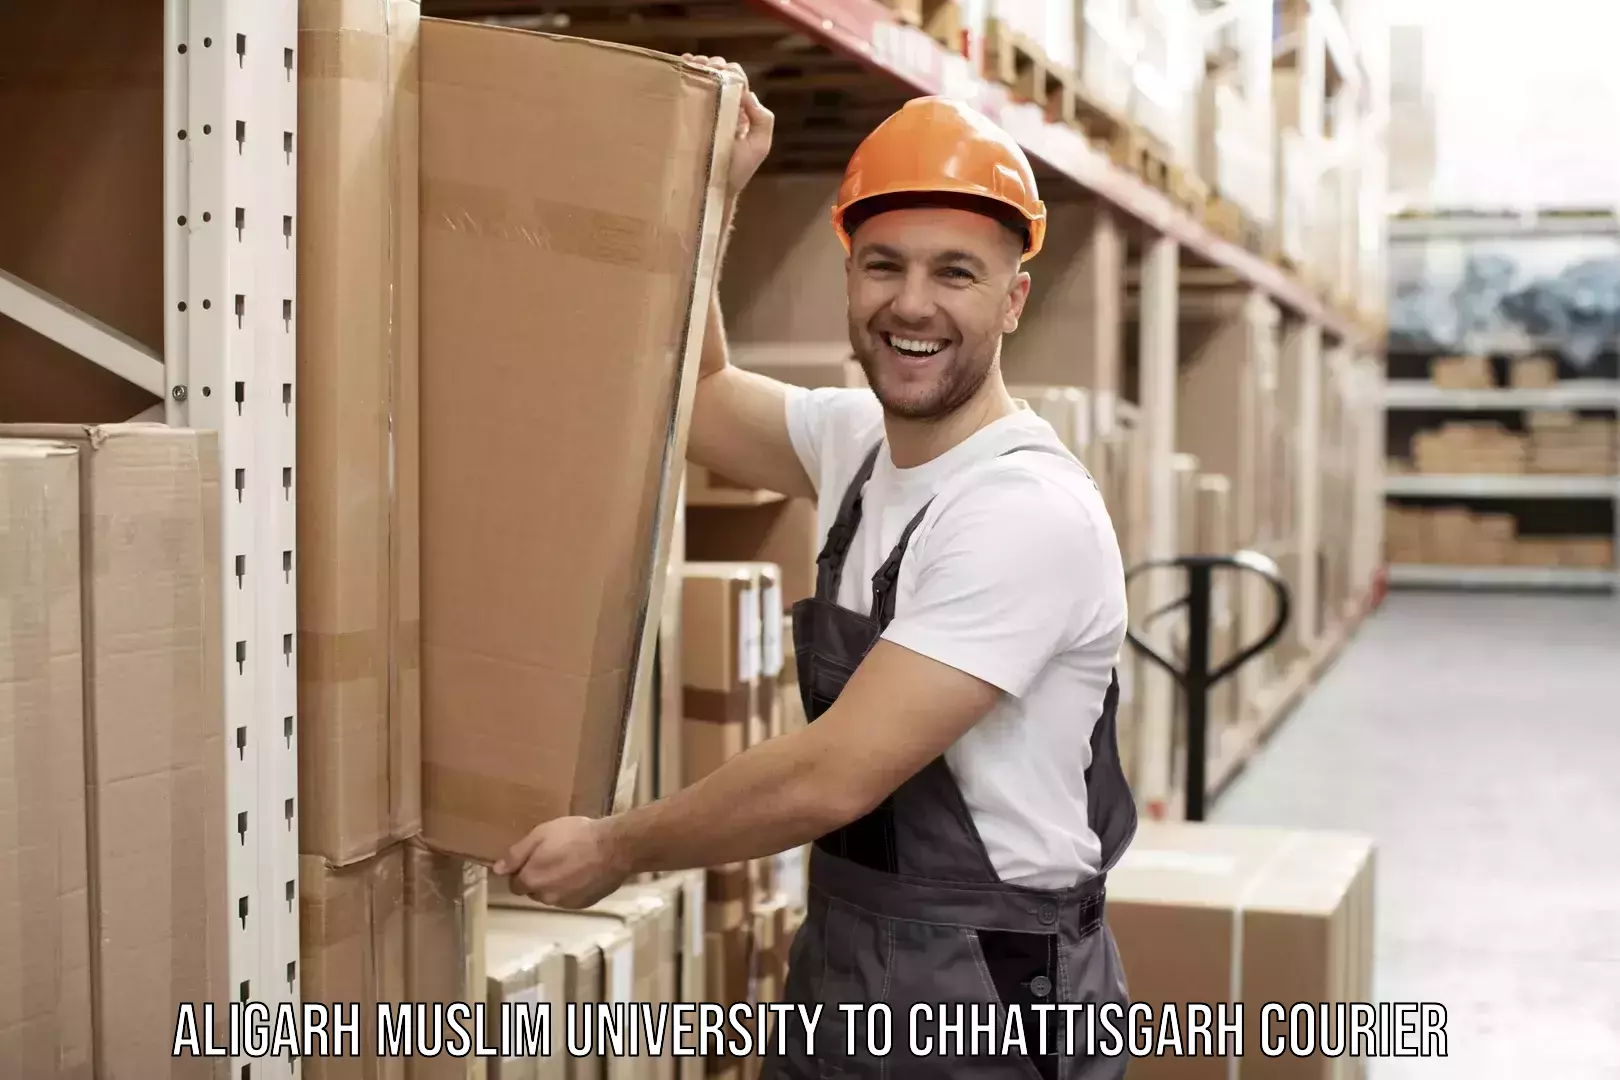 Furniture movers and packers Aligarh Muslim University to Patna Chhattisgarh